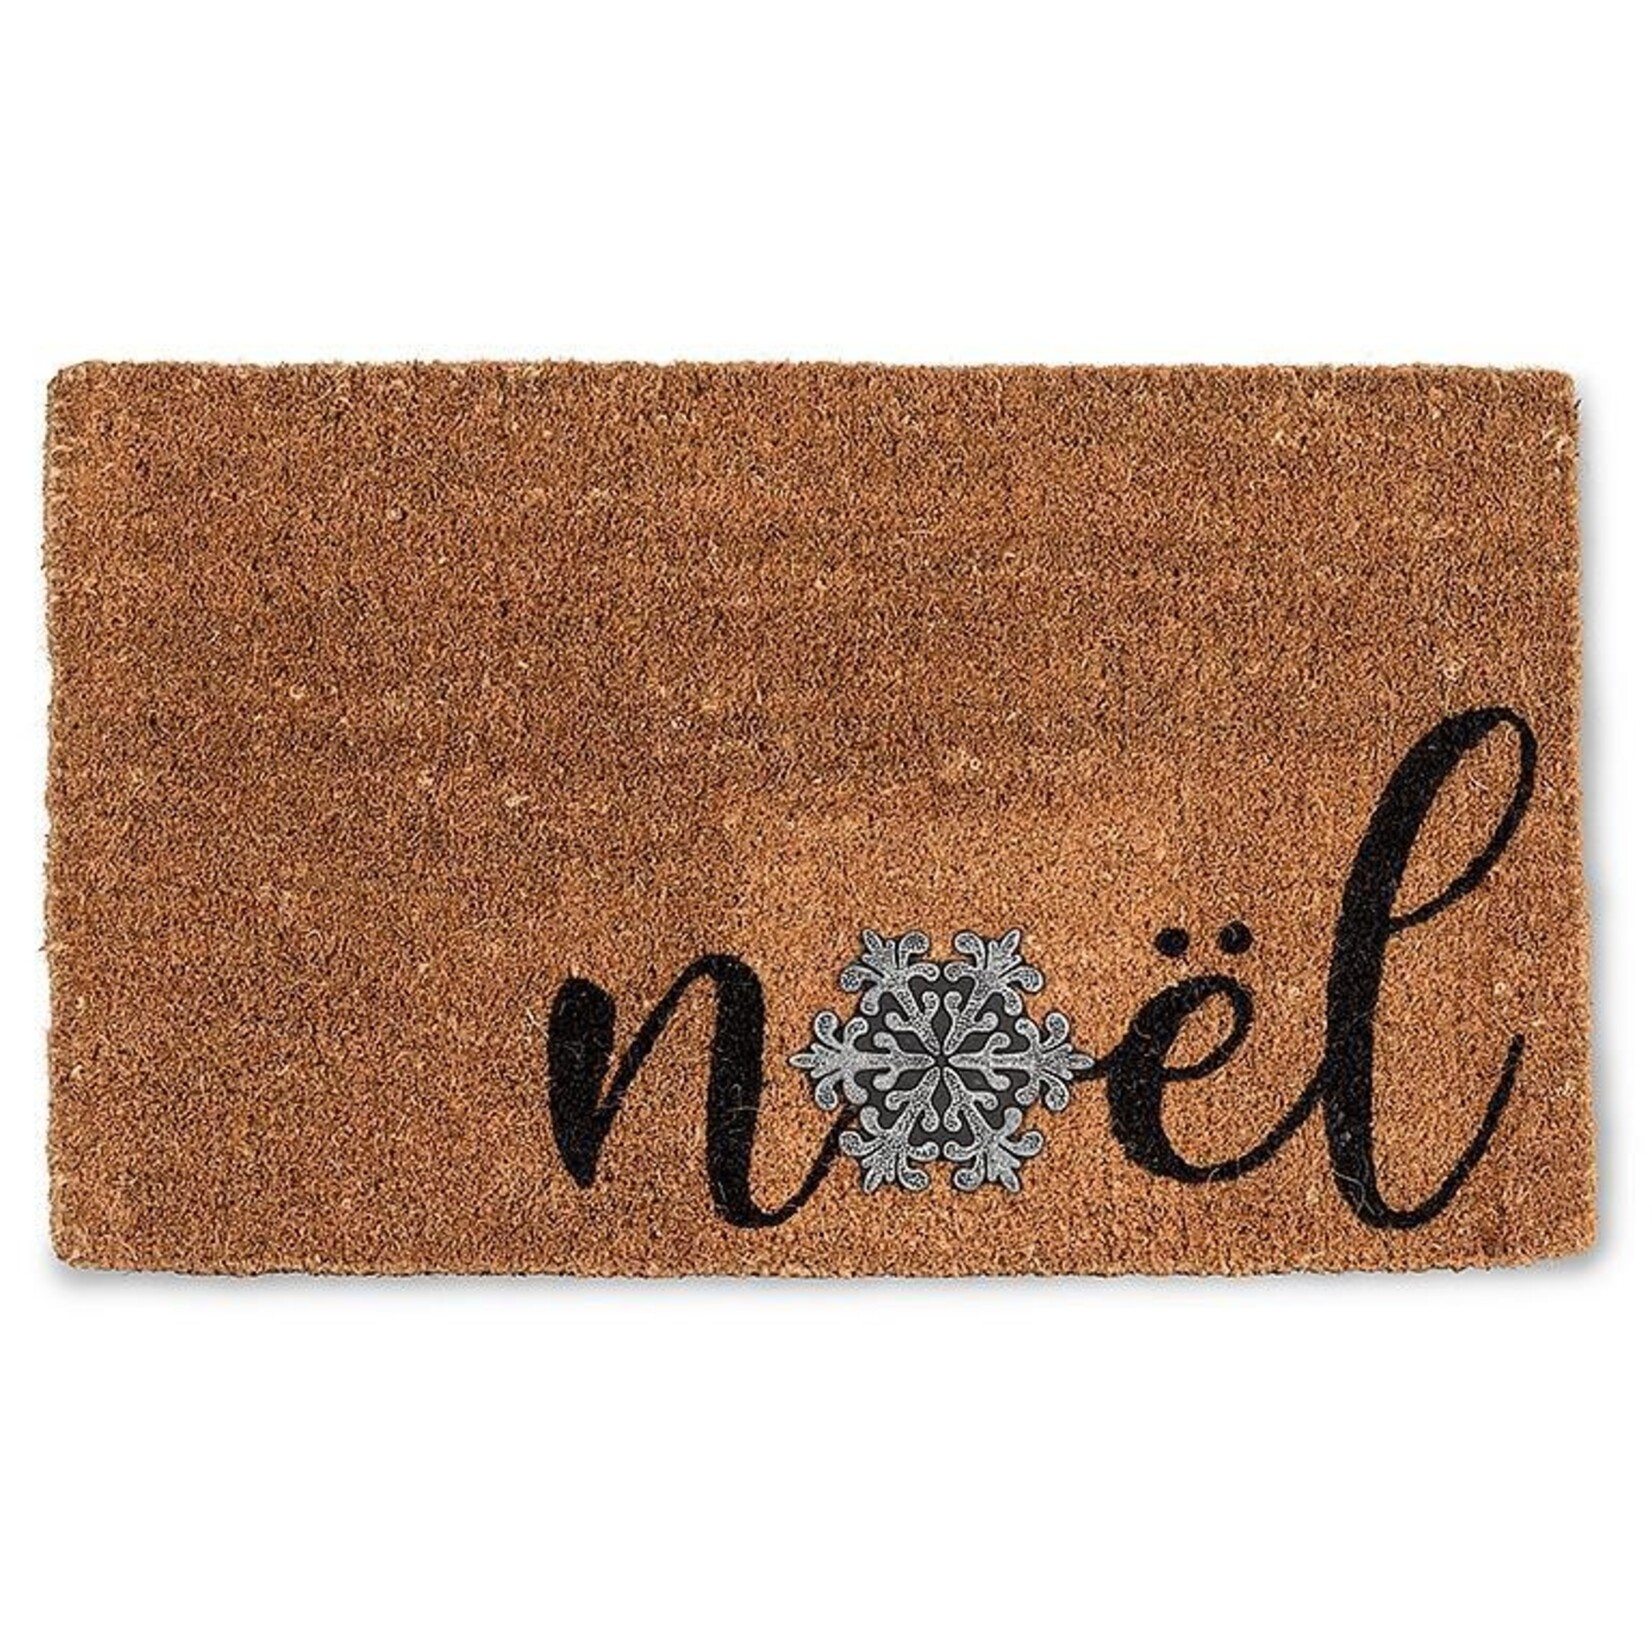 Nova Noel w/Snowflake Doormat